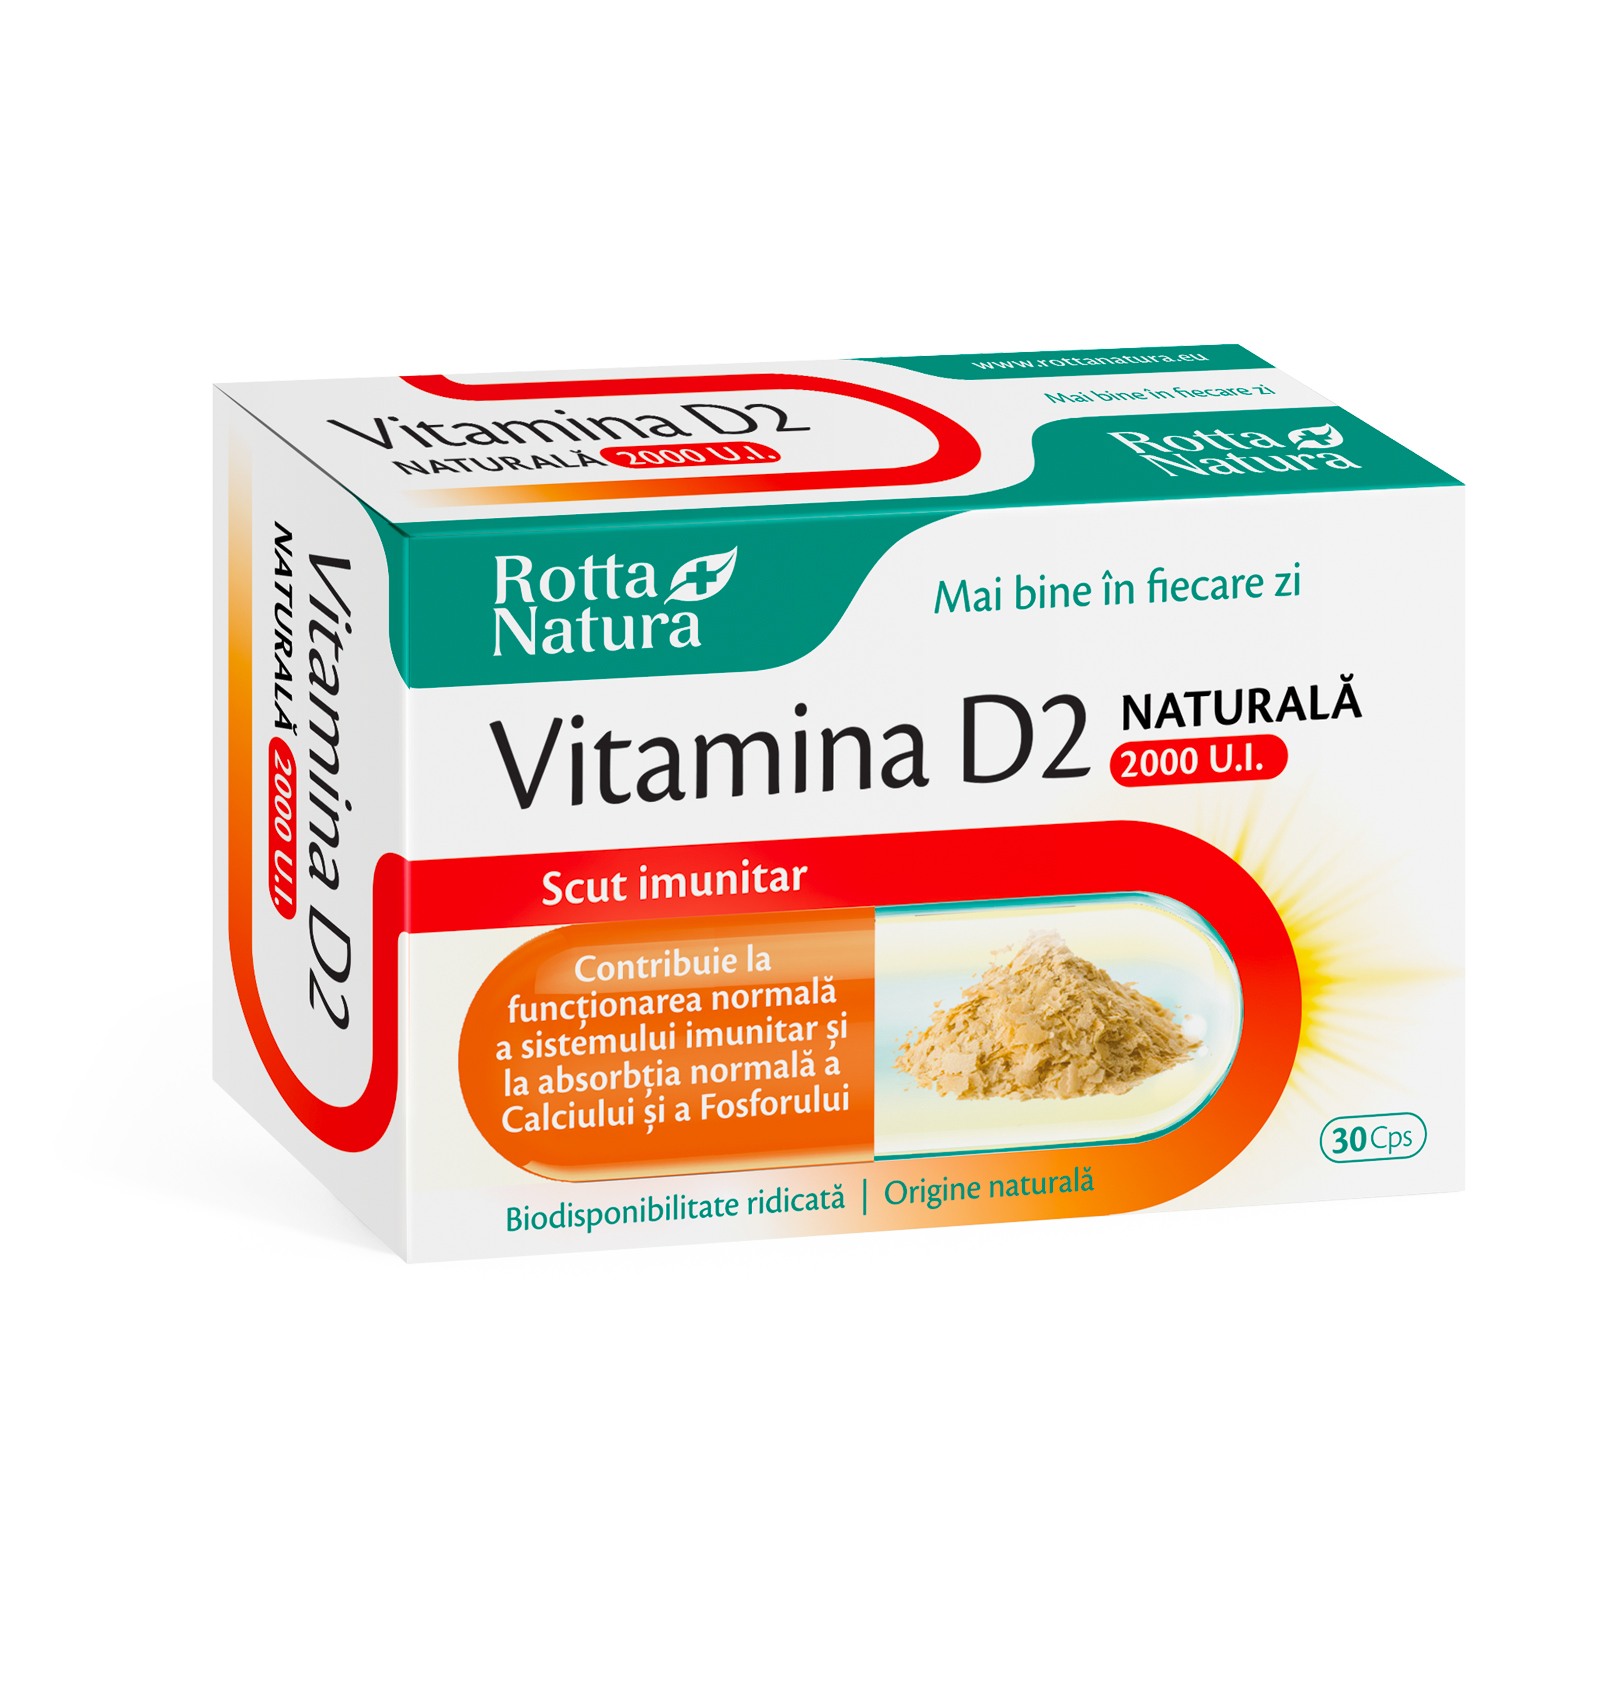 Imunitate - Vitamina D2 naturală, 2000ui, 30 capsule, Rotta Natura, sinapis.ro